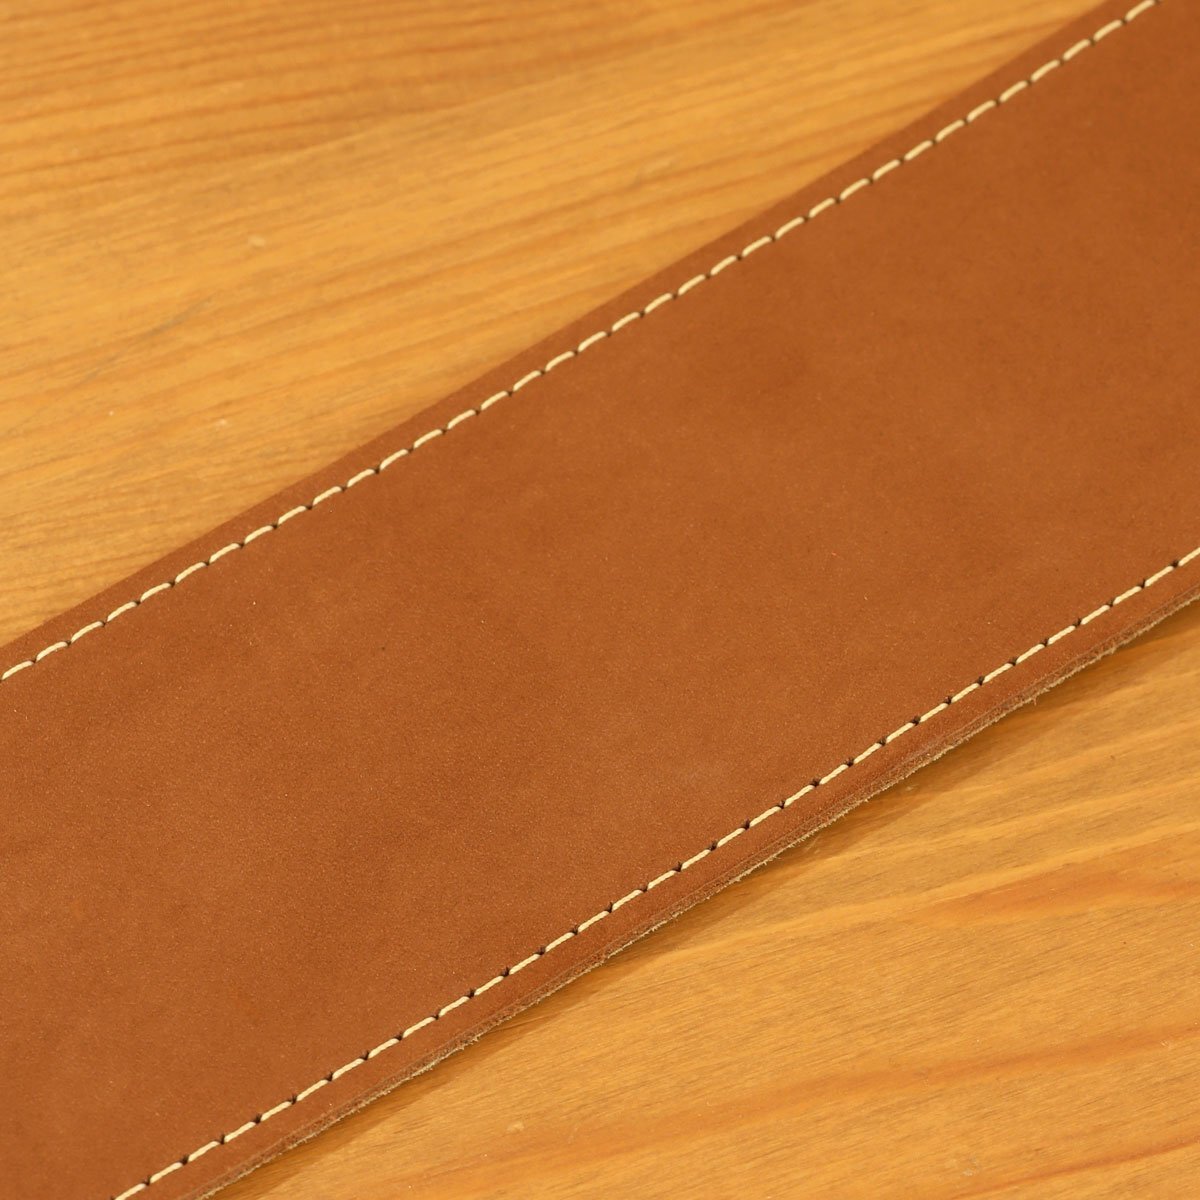 送料無料 新品未使用「LM Products Classic Leather Nubuck Leather LS-2804N Brown」高品質ヌバックレザーギターストラップ ブラウン_画像2